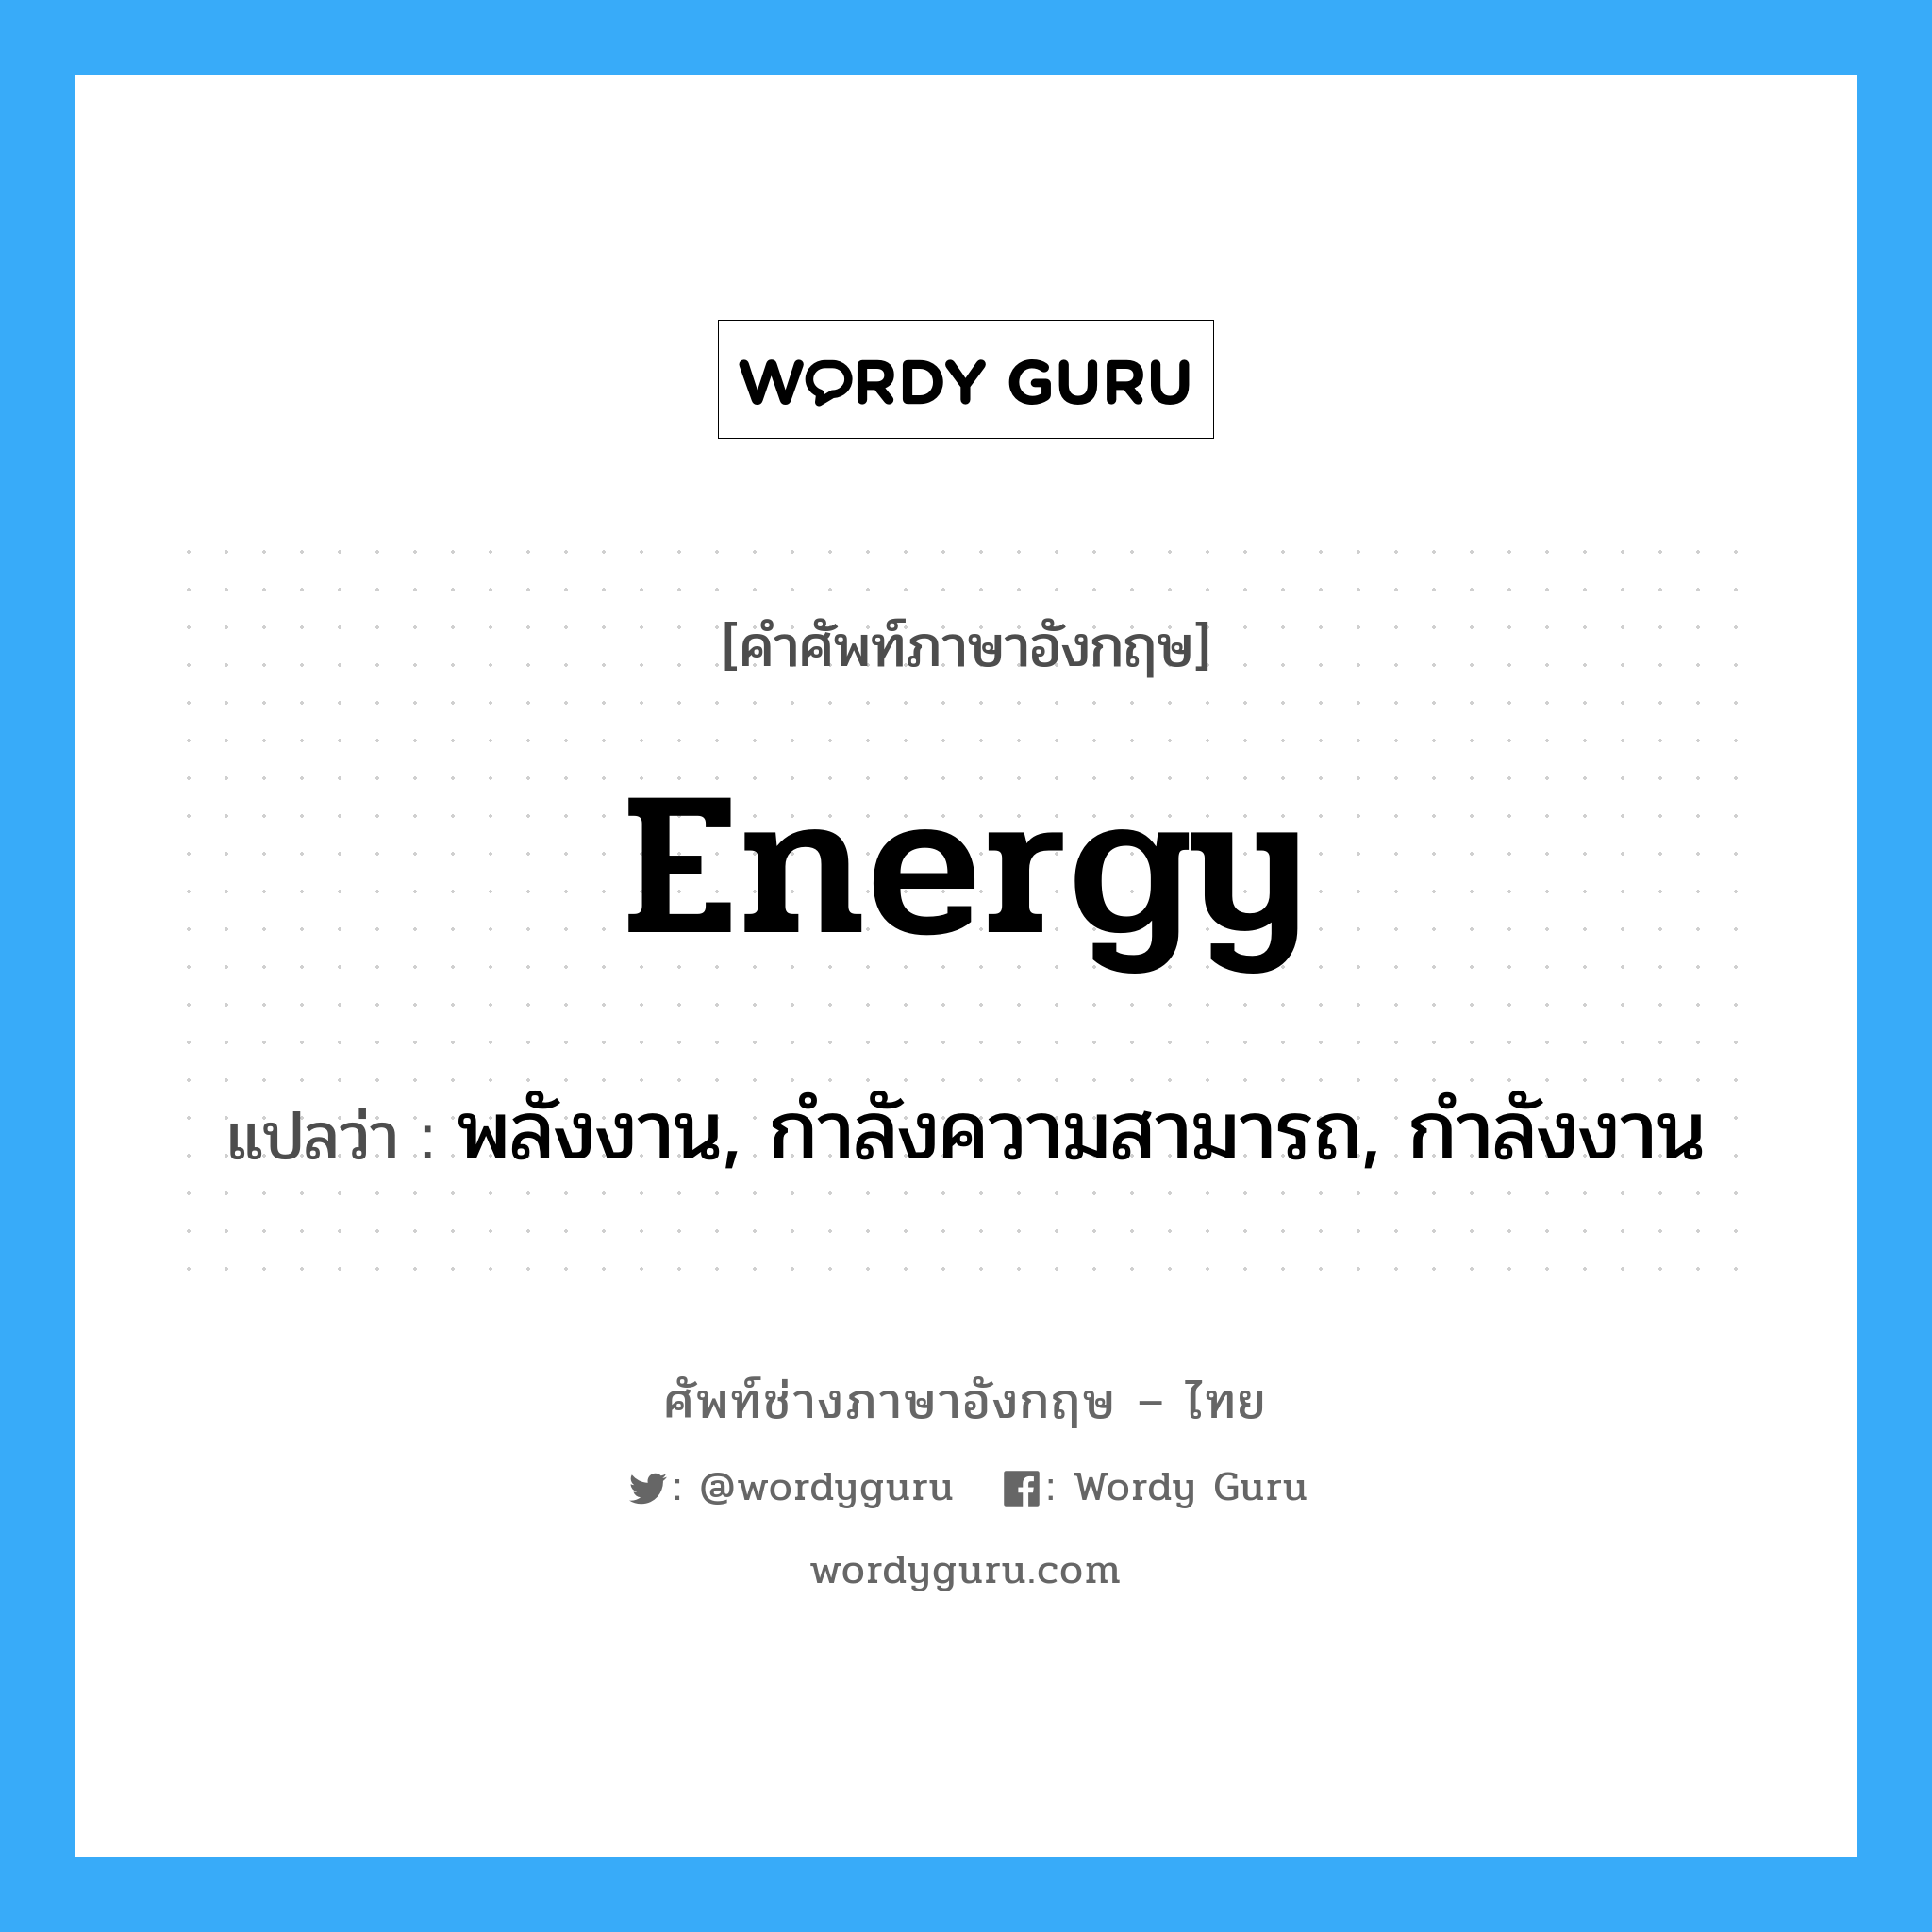 พลังงาน, กำลังความสามารถ, กำลังงาน ภาษาอังกฤษ?, คำศัพท์ช่างภาษาอังกฤษ - ไทย พลังงาน, กำลังความสามารถ, กำลังงาน คำศัพท์ภาษาอังกฤษ พลังงาน, กำลังความสามารถ, กำลังงาน แปลว่า energy